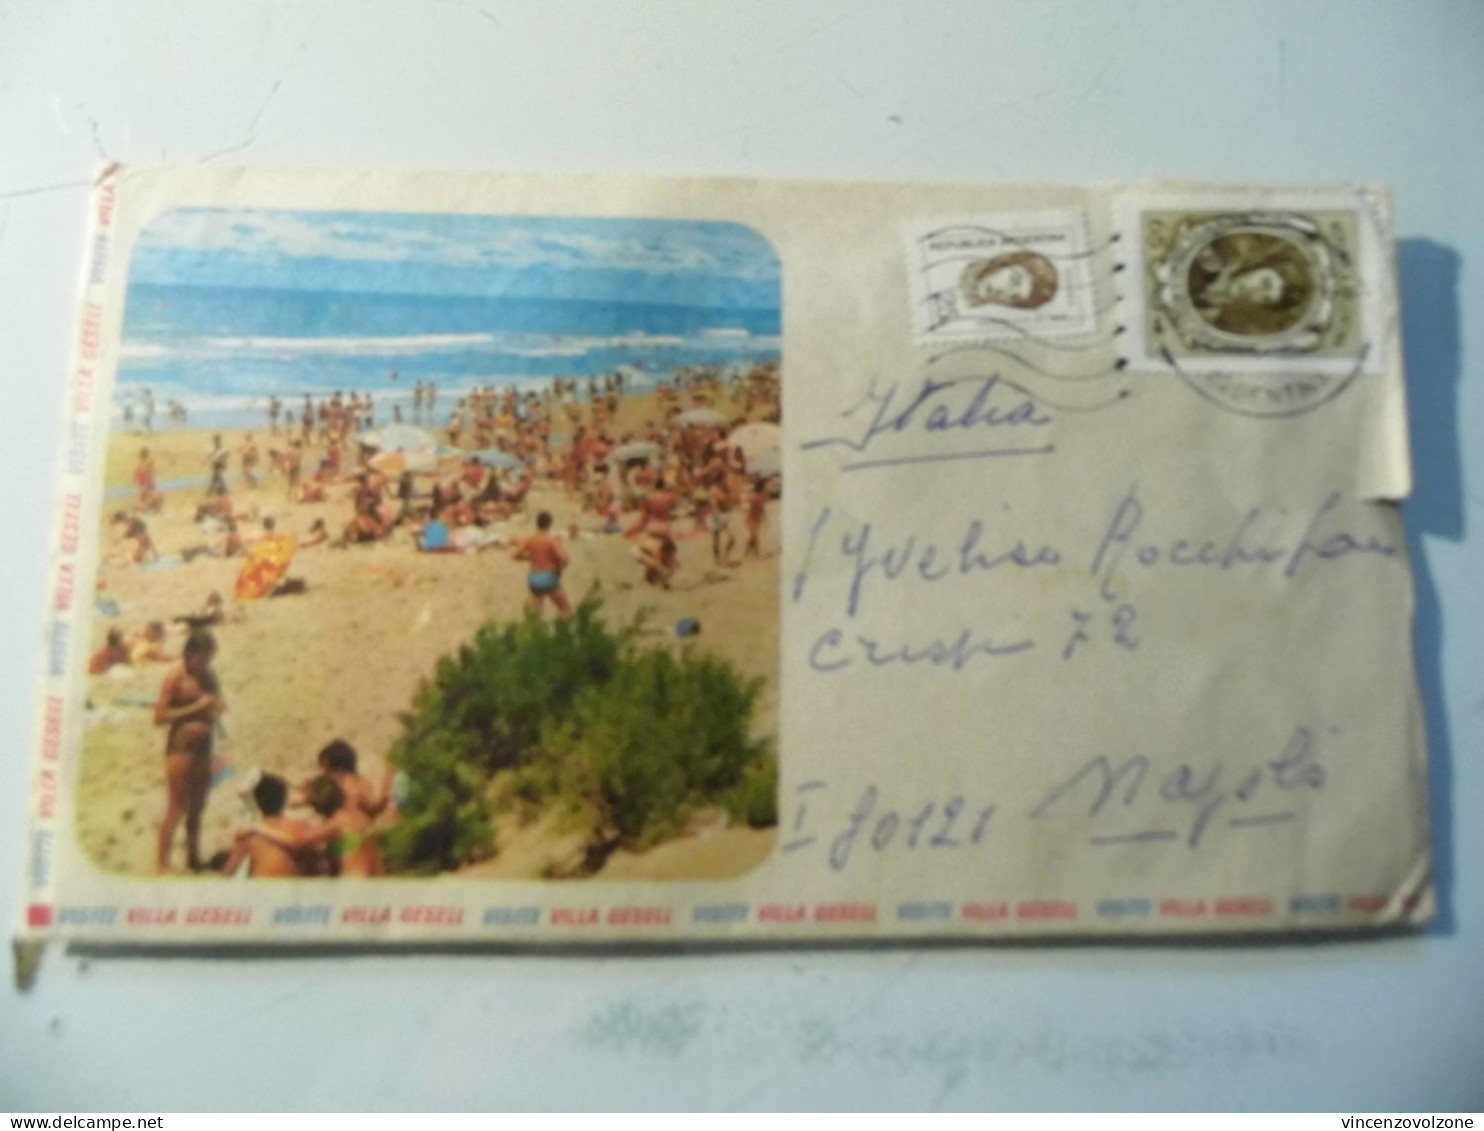 Busta Viaggiata Con Cartolina Per L'italia "VISITE VILLA GERSEL" 1972 - Briefe U. Dokumente